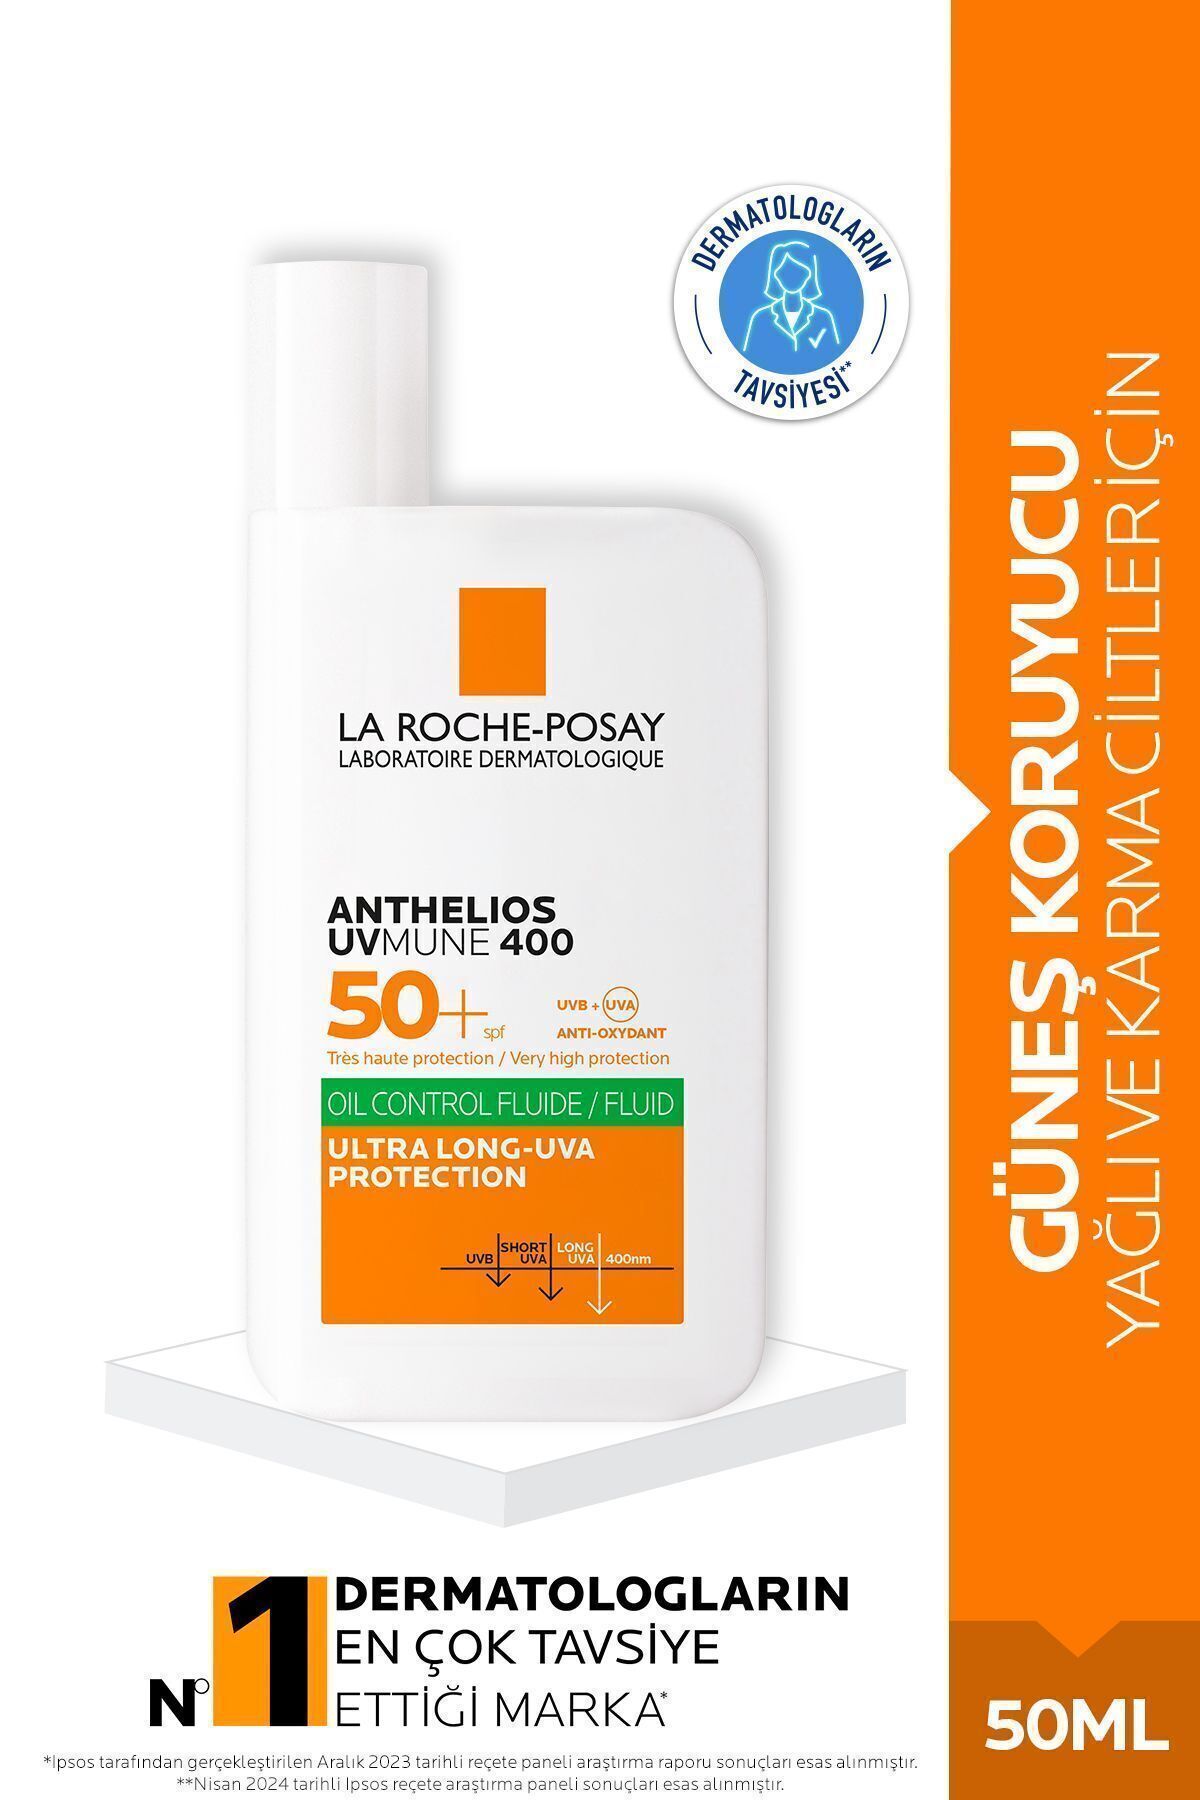 La Roche Posay Anthelios Uvmune 400 Oil Control Fluide Spf50 50 ml